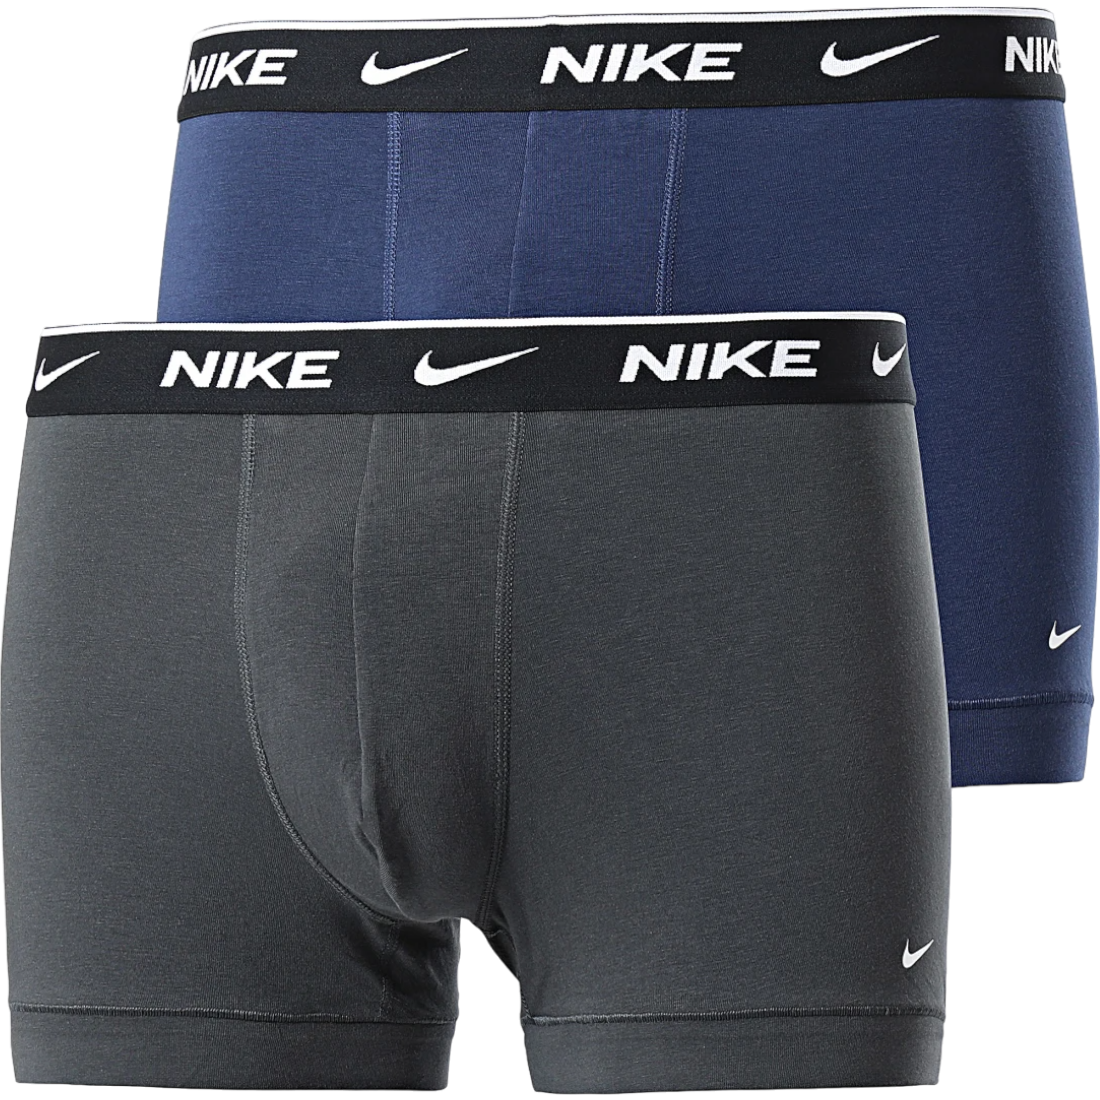 Boxer shorts Nike Cotton Trunk 2 pcs